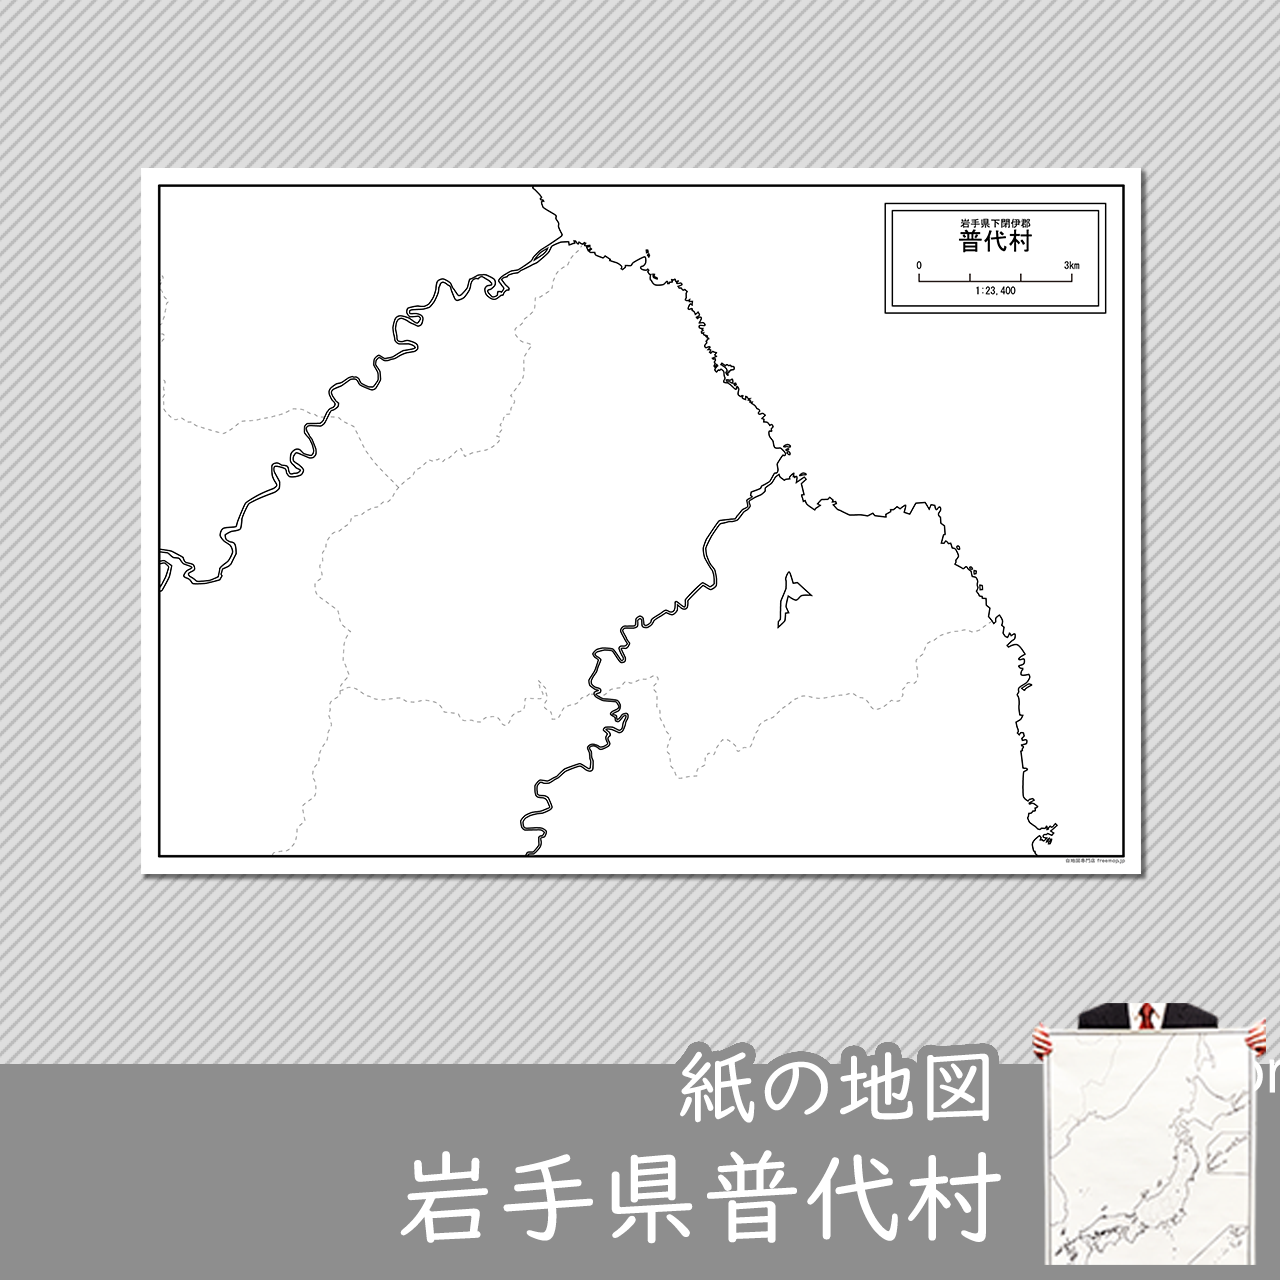 普代村の紙の白地図のサムネイル